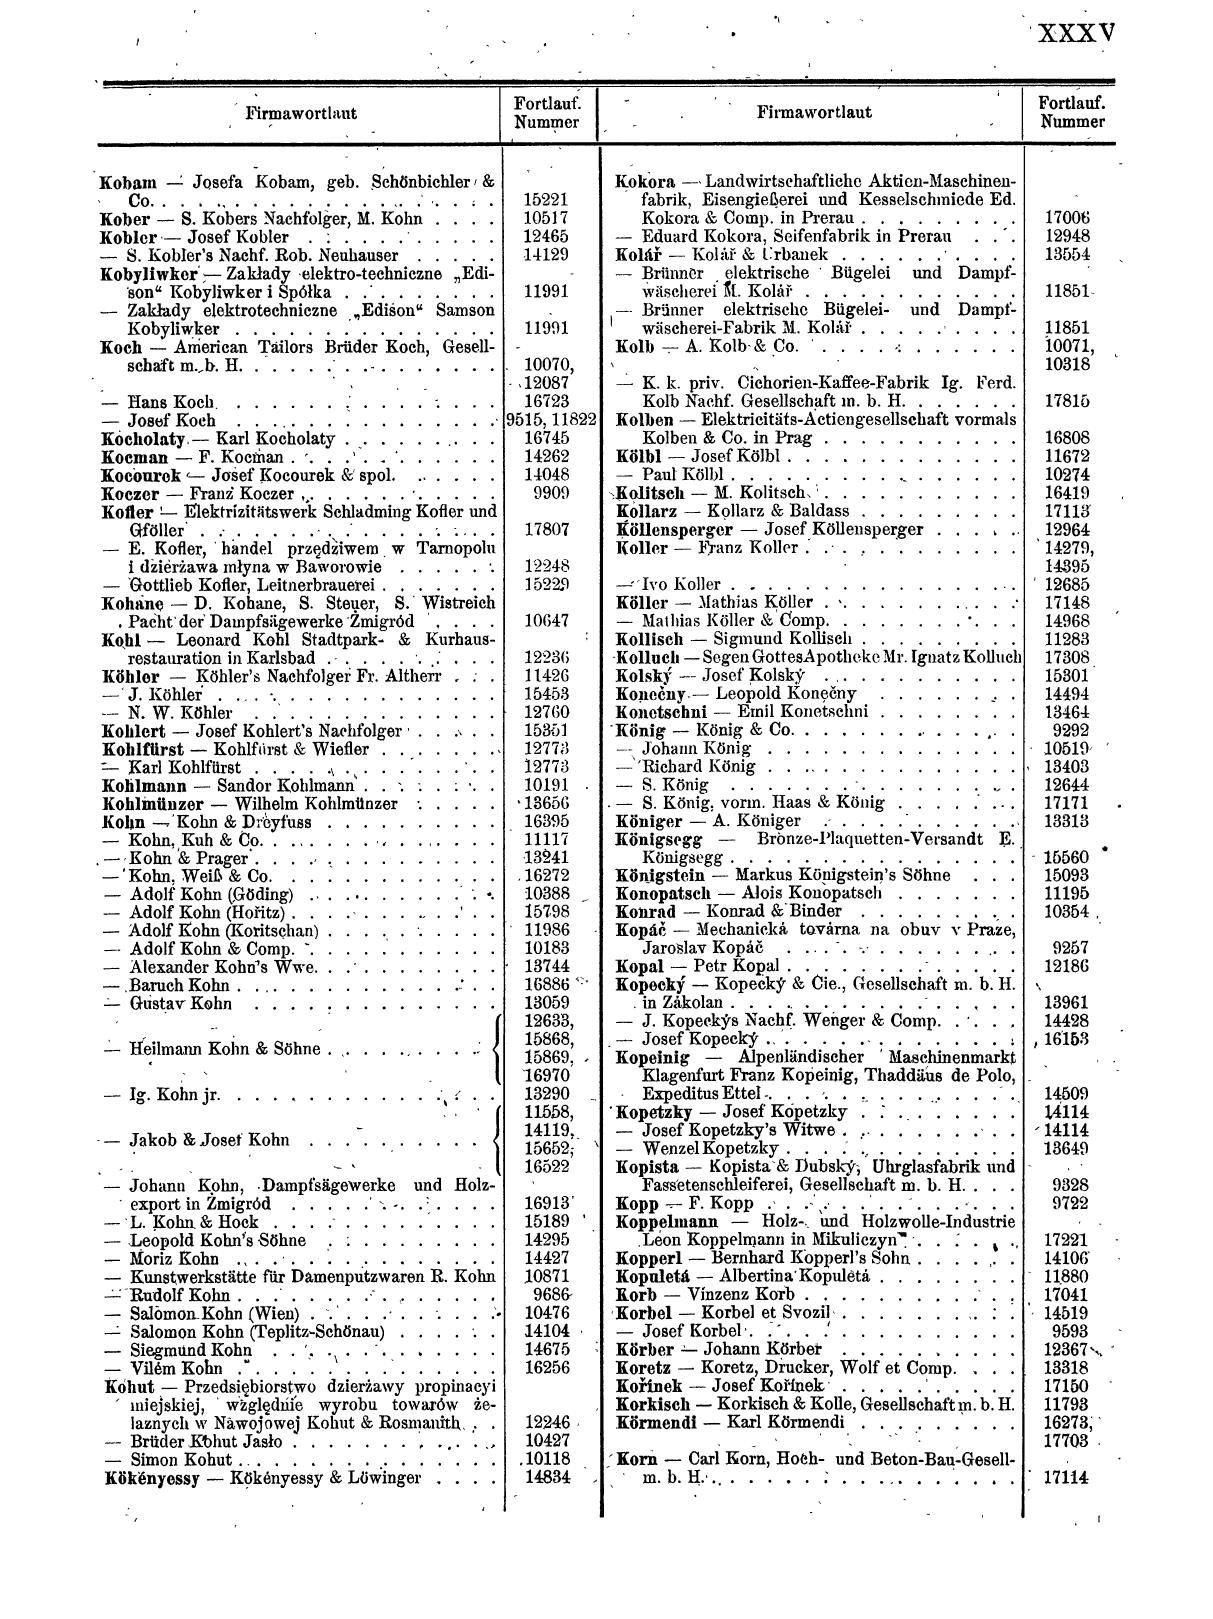 Zentralblatt für die Eintragungen in das Handelsregister 1913, Teil 2 - Seite 39